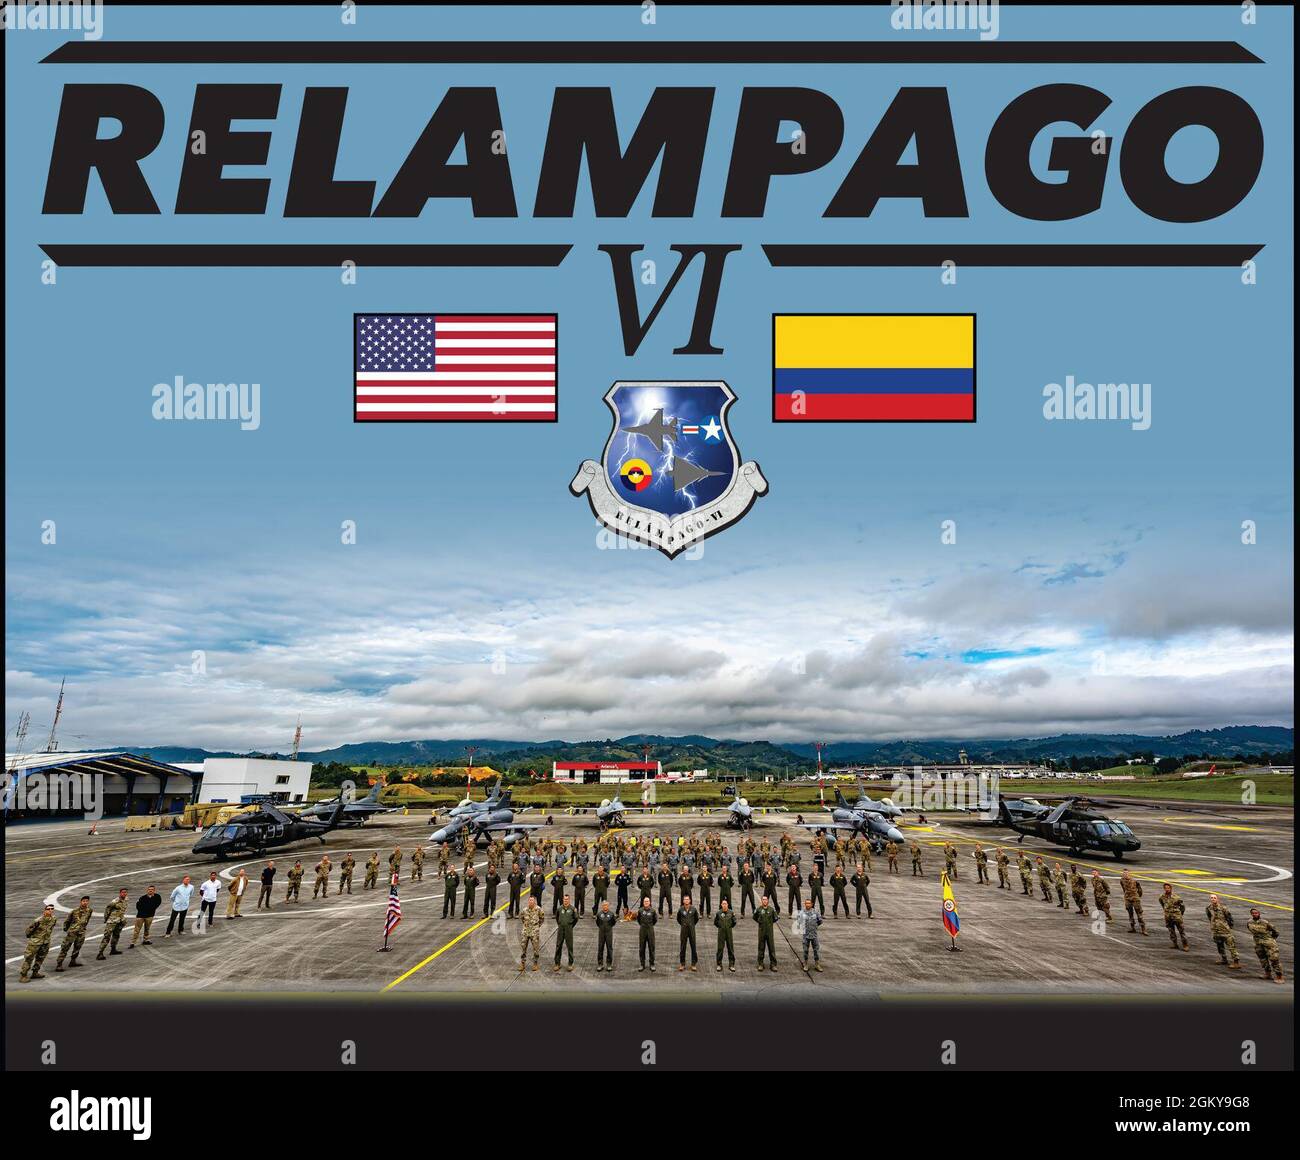 Gli airman e i piloti assegnati rispettivamente al 474° Squadrone Expeditionary Operations Support e al 79° Squadrone Expeditionary Fighter, si sono dedicati a tecniche, tattiche e procedure per rafforzare la partnership di lunga data tra i nostri paesi durante l'esercizio Relampago VI al CACOM 5 di Rionegro, in Colombia, durante tutto il mese di luglio. Relampago VI offre una formazione combinata e migliora la preparazione del personale militare degli Stati Uniti e dei paesi partner attraverso la formazione sull'interoperabilità. Gli Stati Uniti sono un partner duraturo e affidabile con una partecipazione condivisa nella sicurezza e nella prosperità o Foto Stock